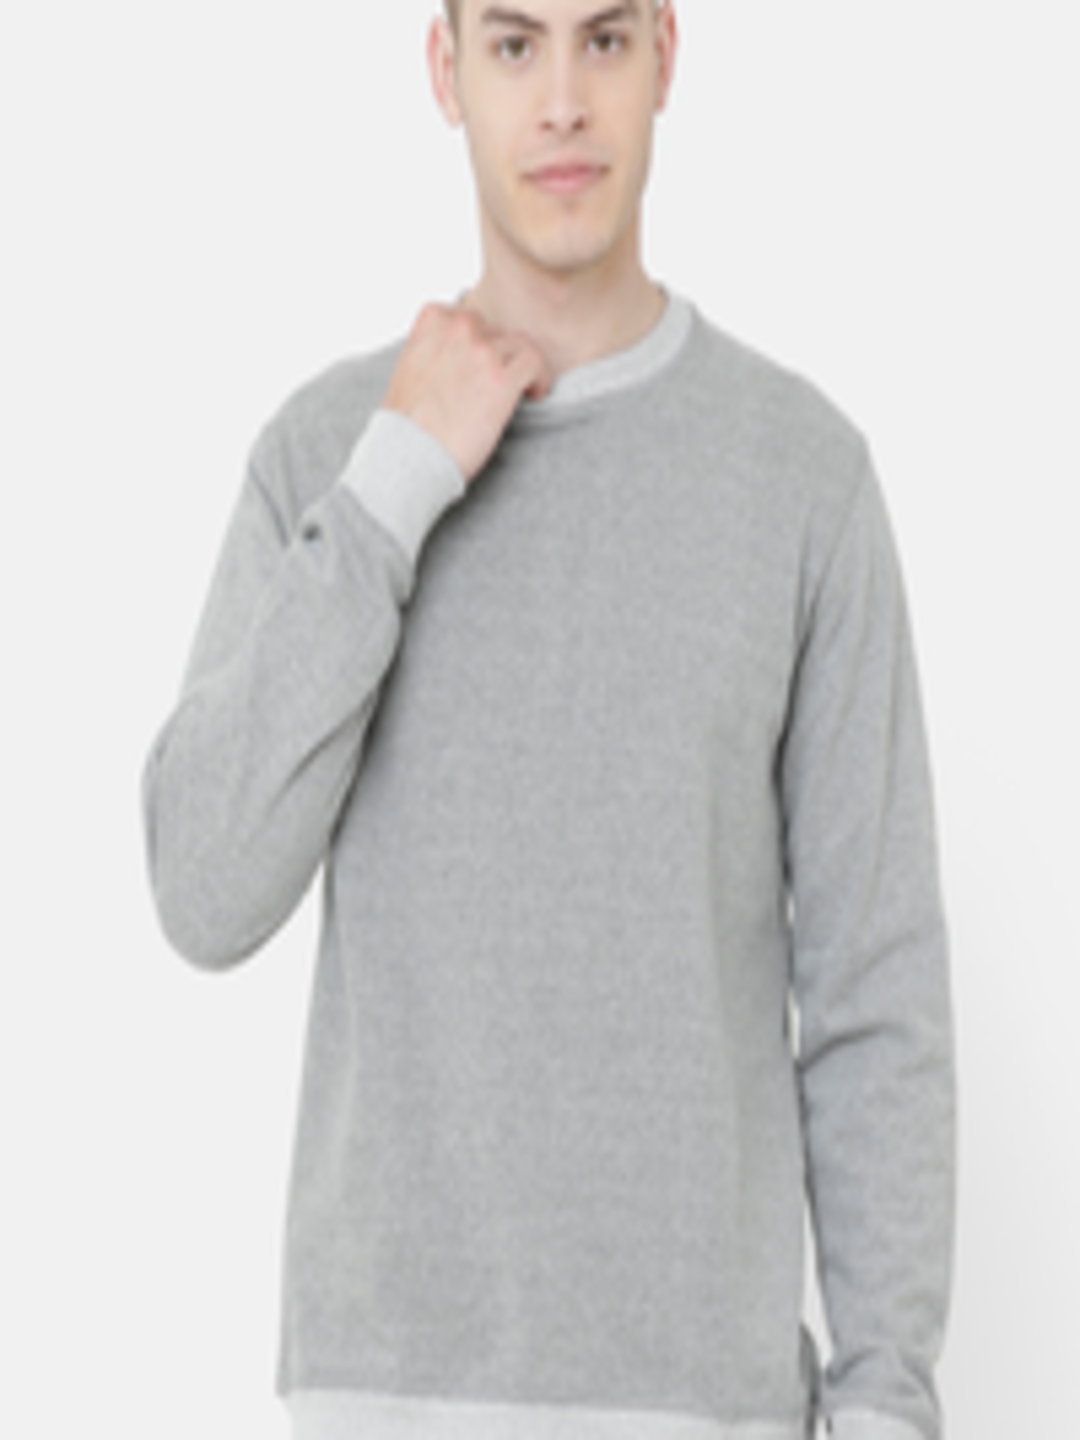 Buy ELEGANCE Men Grey Solid Sweatshirt - Sweatshirts for Men 11518082 ...